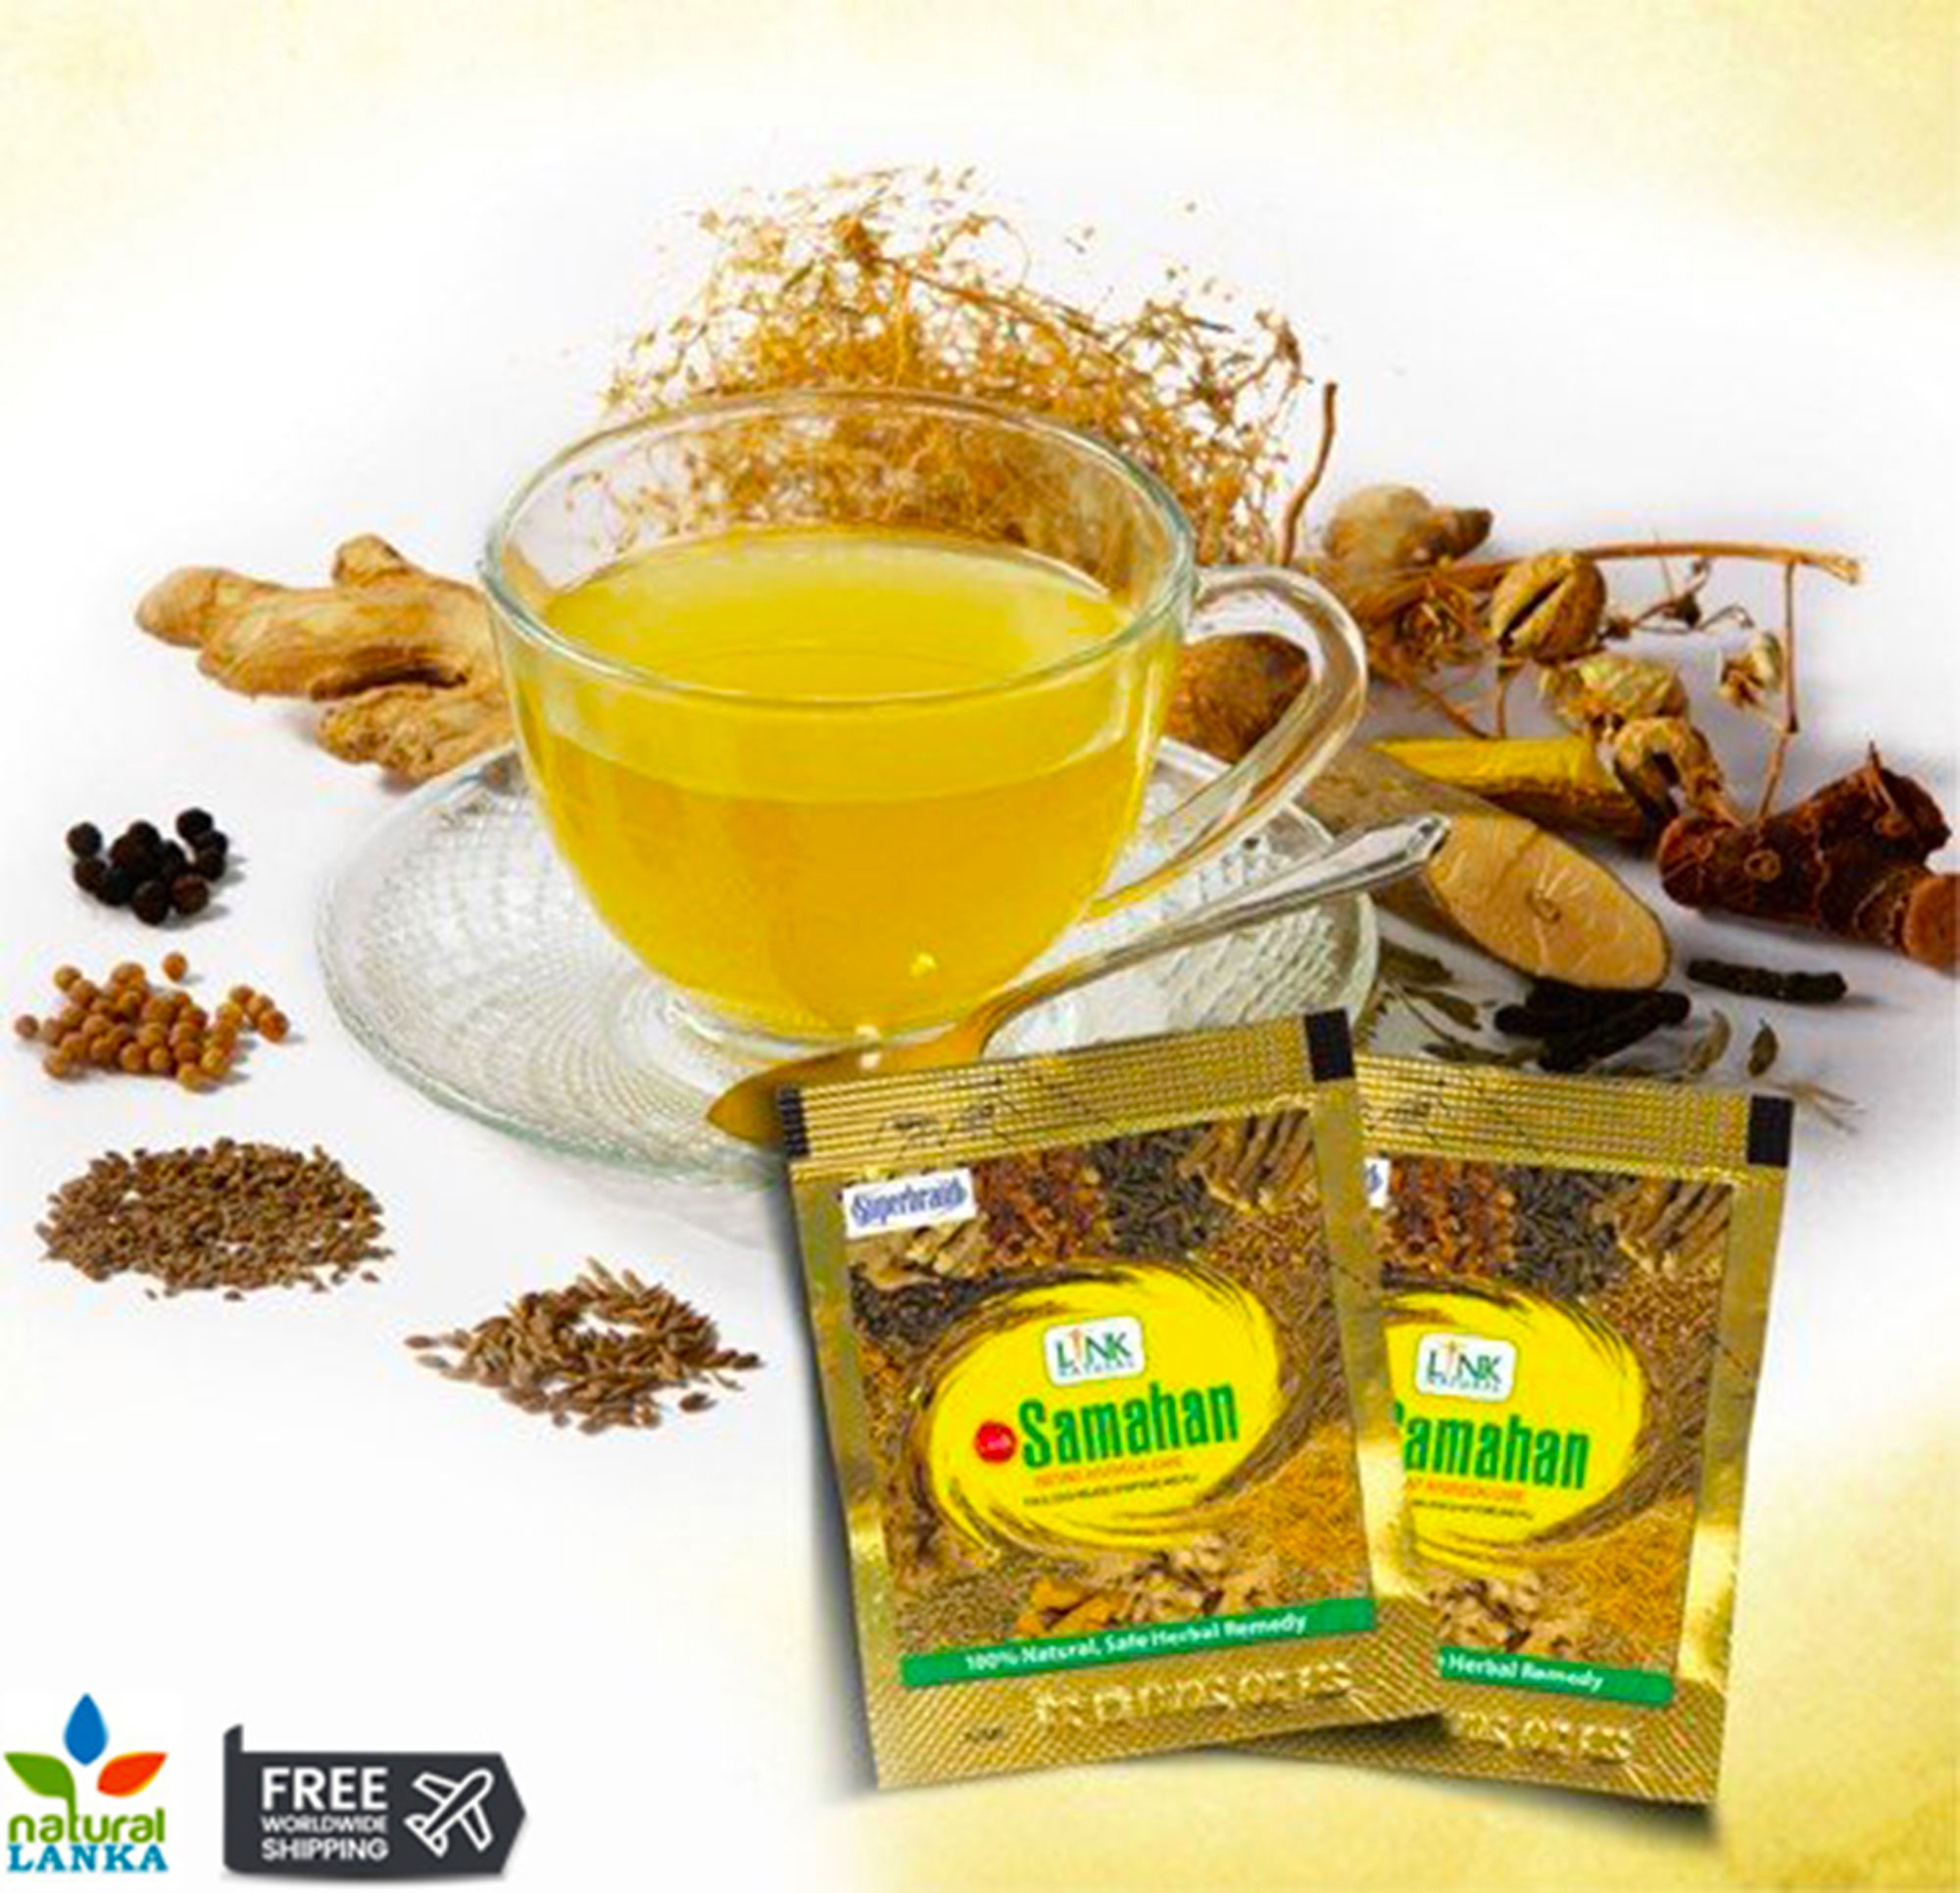 Samahan Natural Herbal Tea - 30 tepåsar